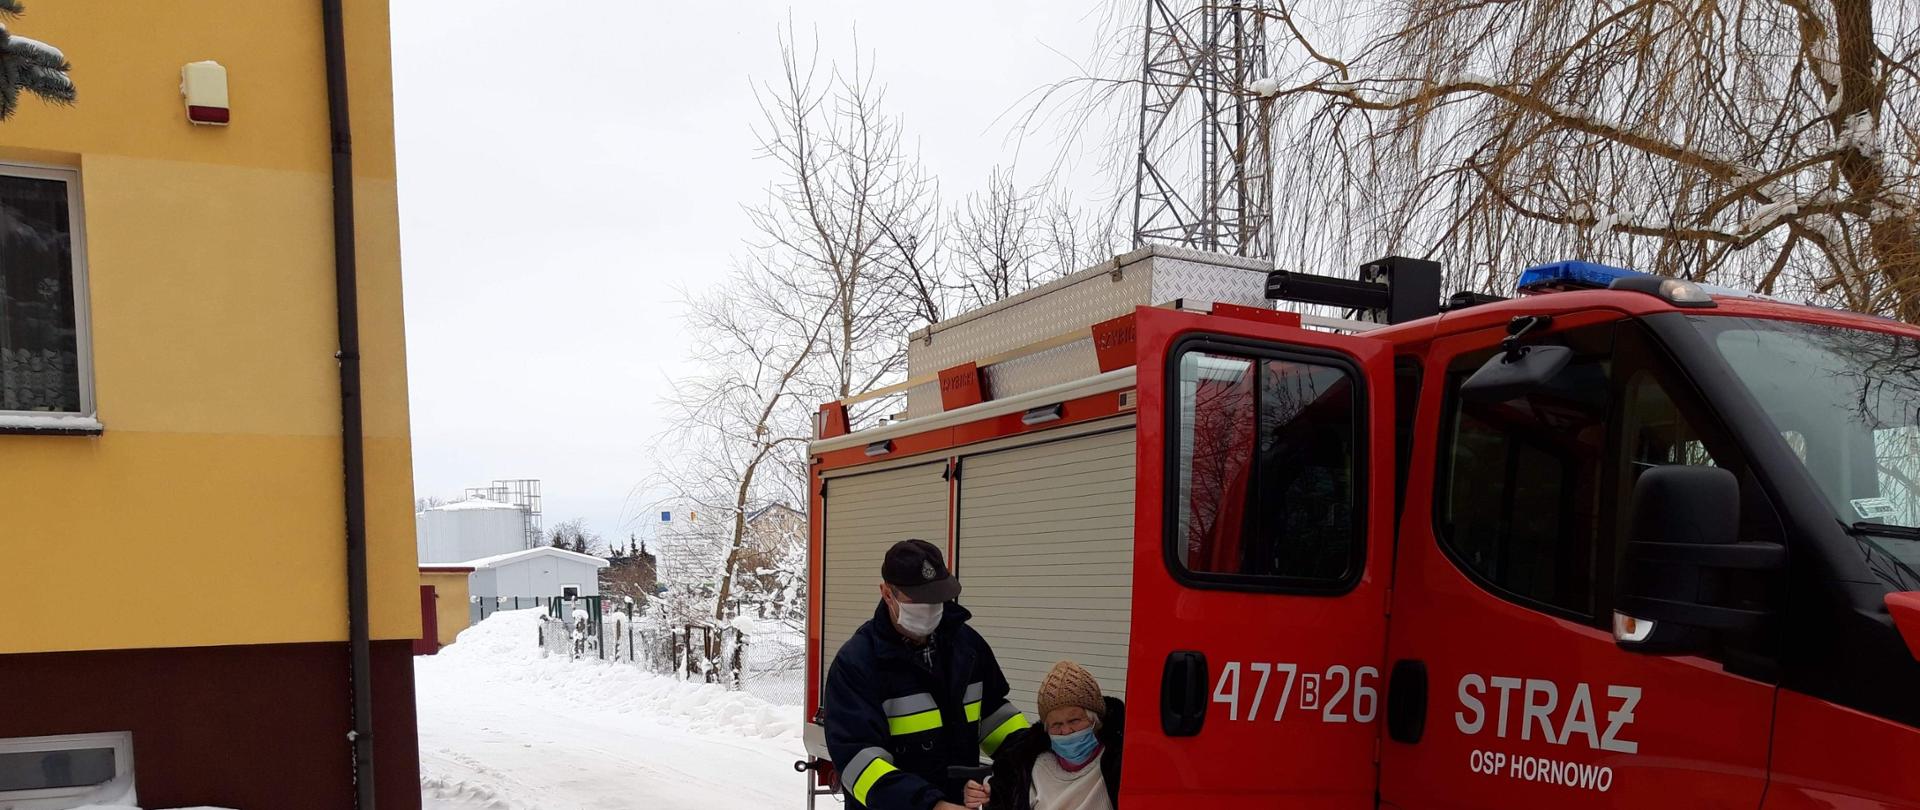 Samochód pożarniczy koloru czerwonego, stojący na śniegu. Strażak pomaga wsiadać osobie starszej która ma dojechać na szczepienie COVID-19.